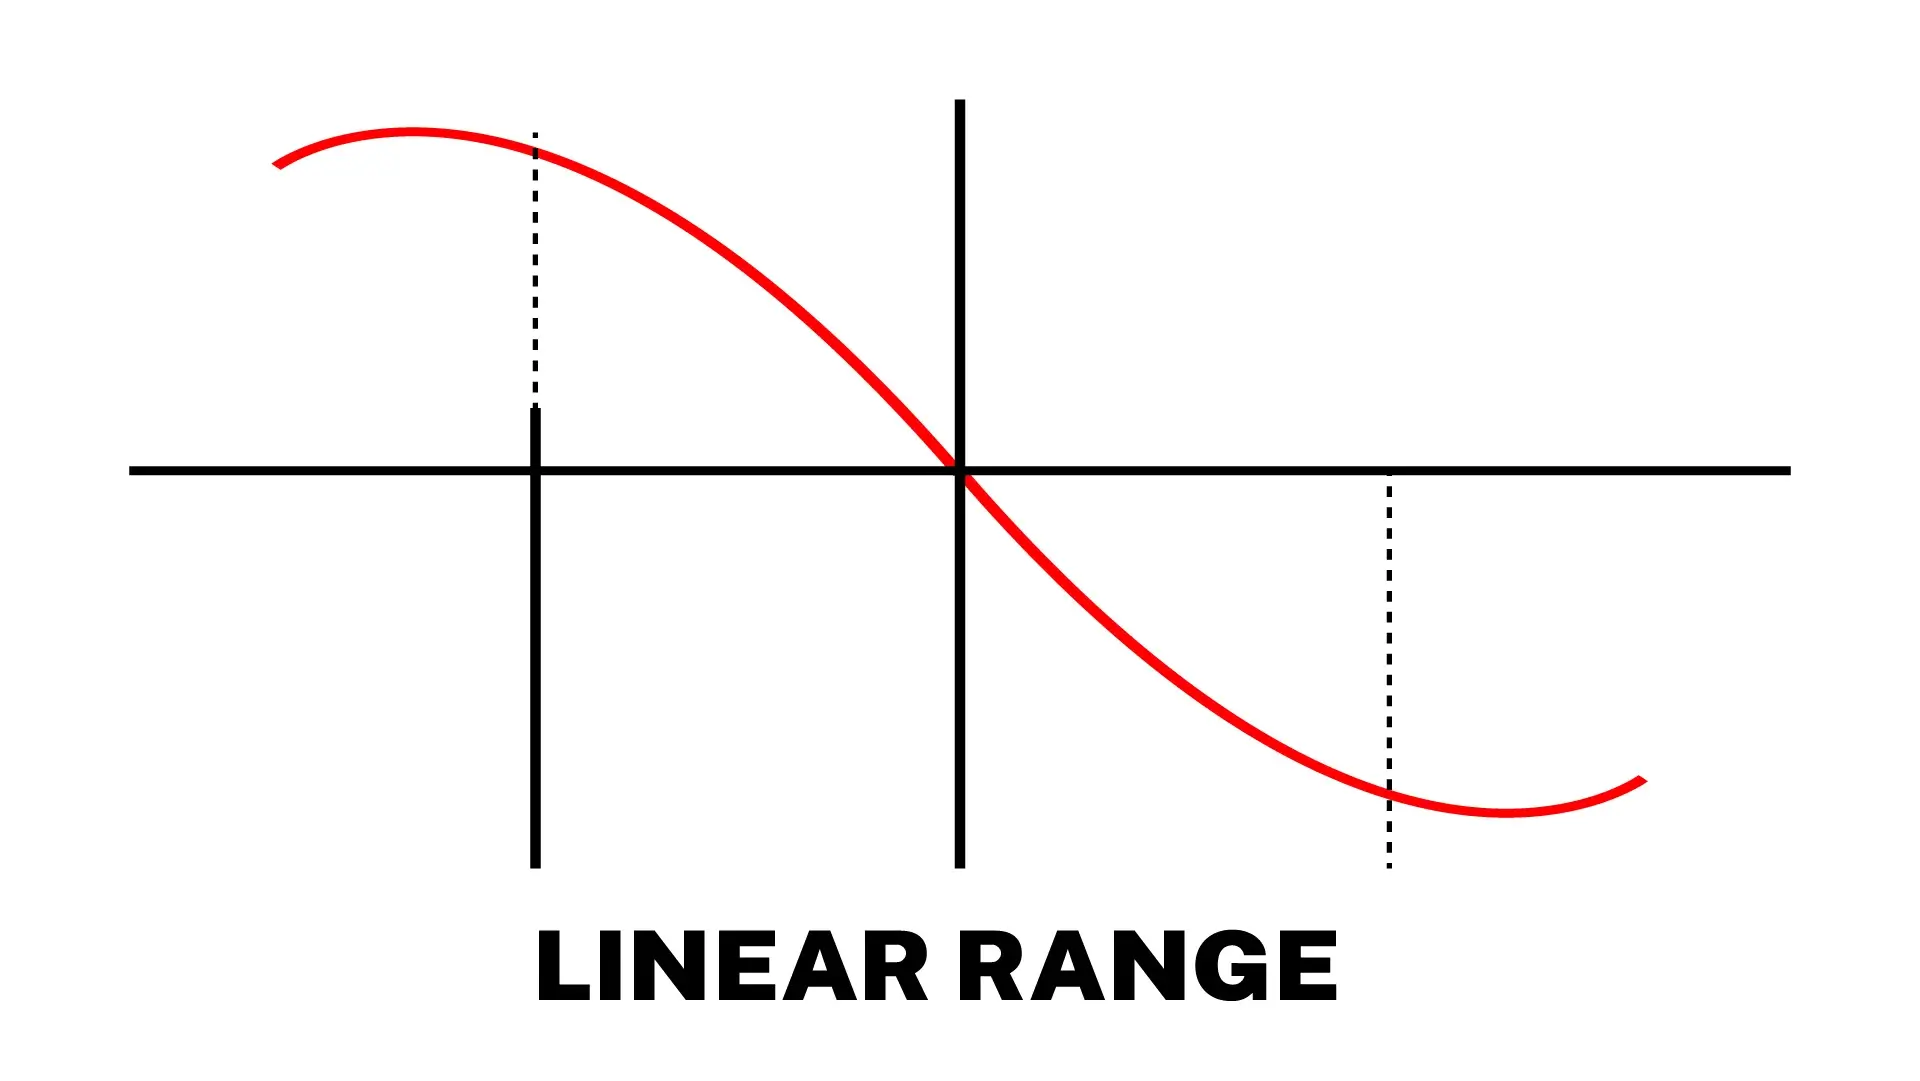 LVDT Linear Range Diagram